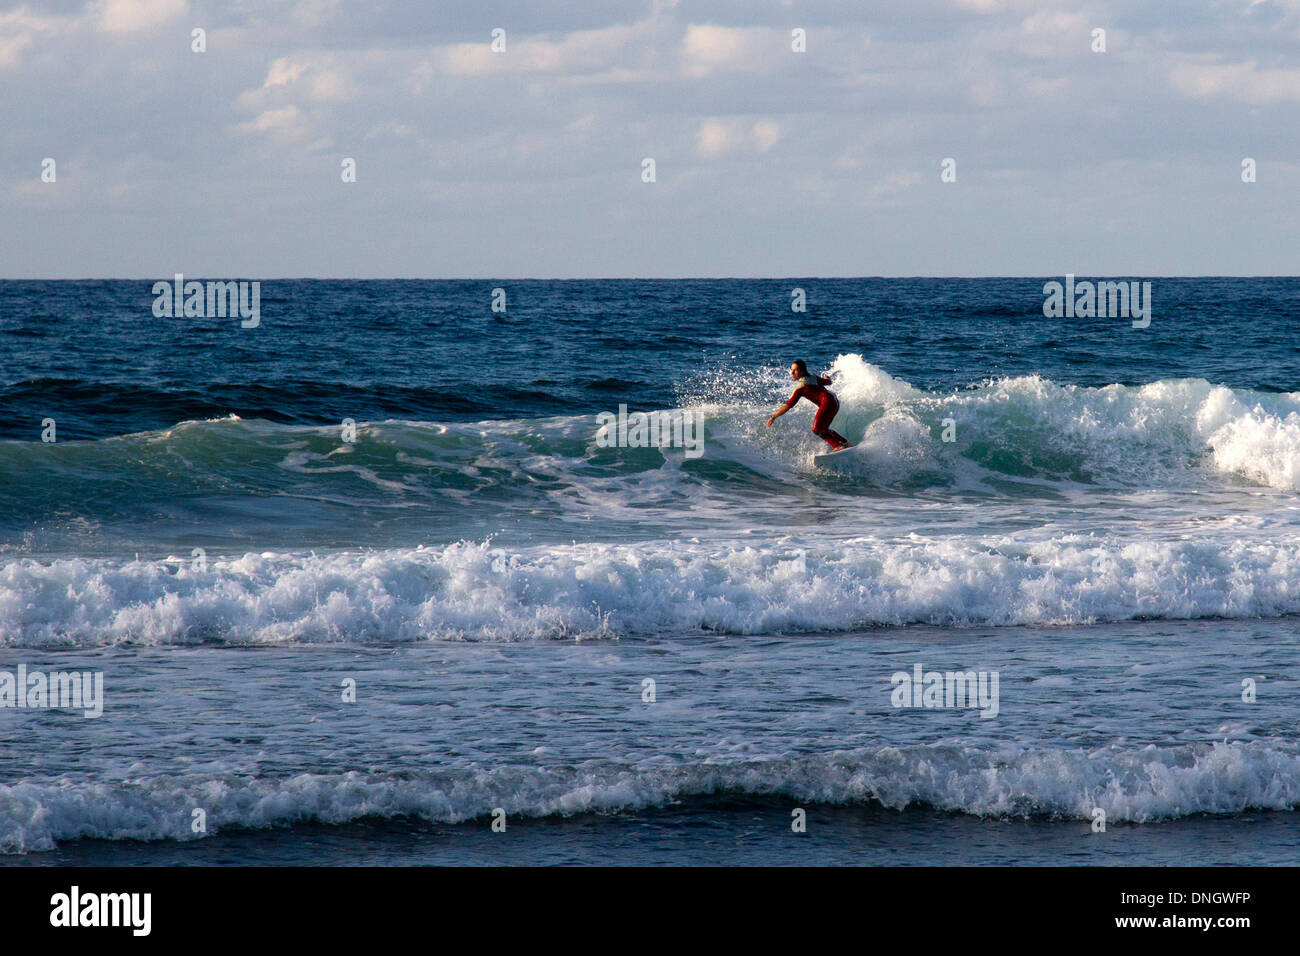 Bakio Strand baskischen Land Cantábrico Kantabrische Meer Strand Spanien Surfen Stockfoto